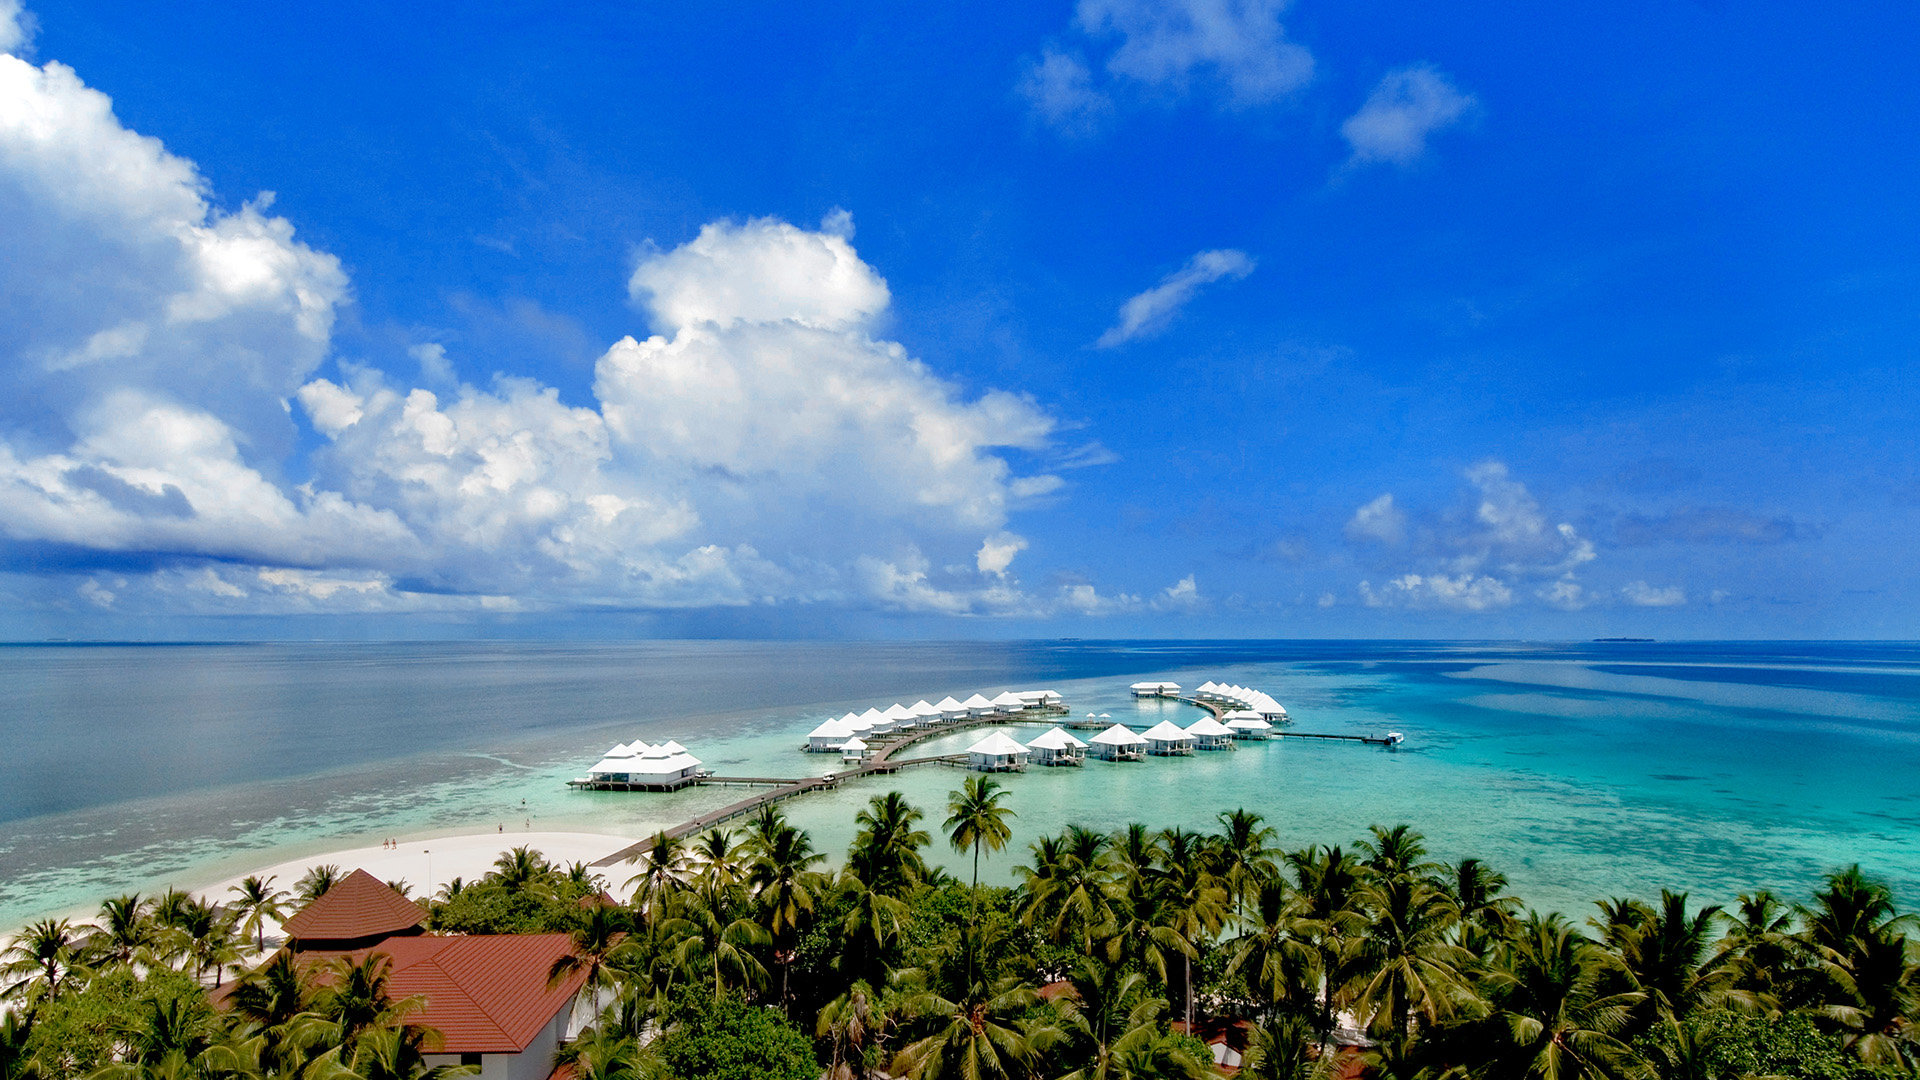 Обои на рабочий стол Райский уголок. Остров Махибадху. Остров Махибадху Мальдивы фото. Sun Island Resort Spa 5 Мальдивы. Погода на мальдивах в августе